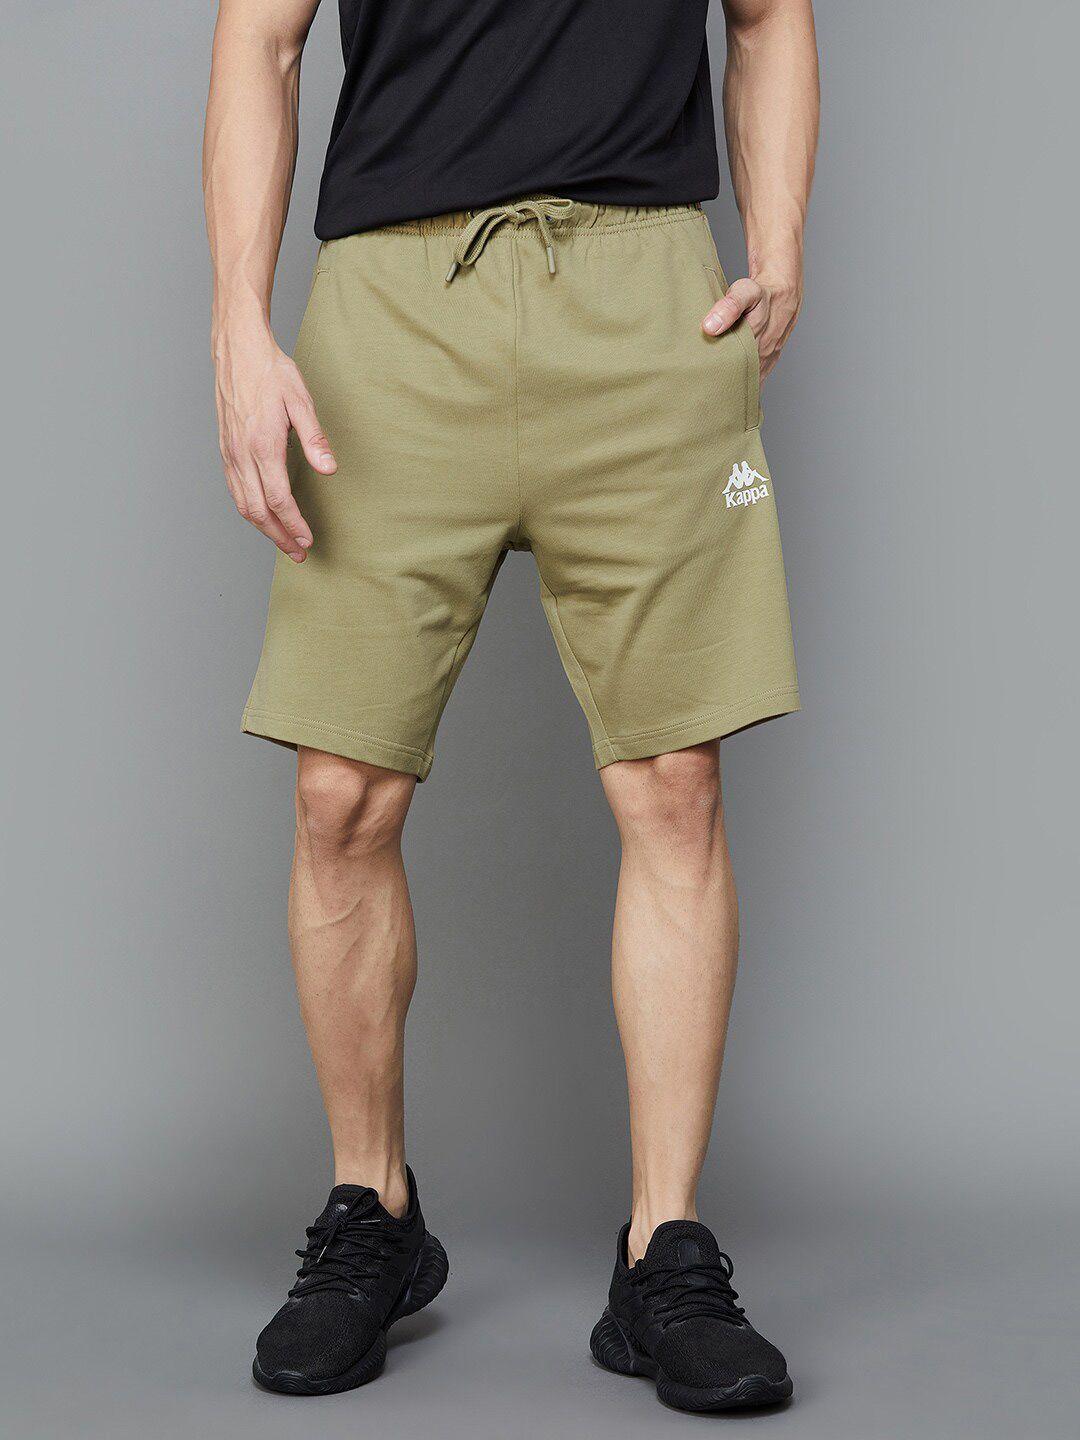 kappa men mid-rise cotton shorts